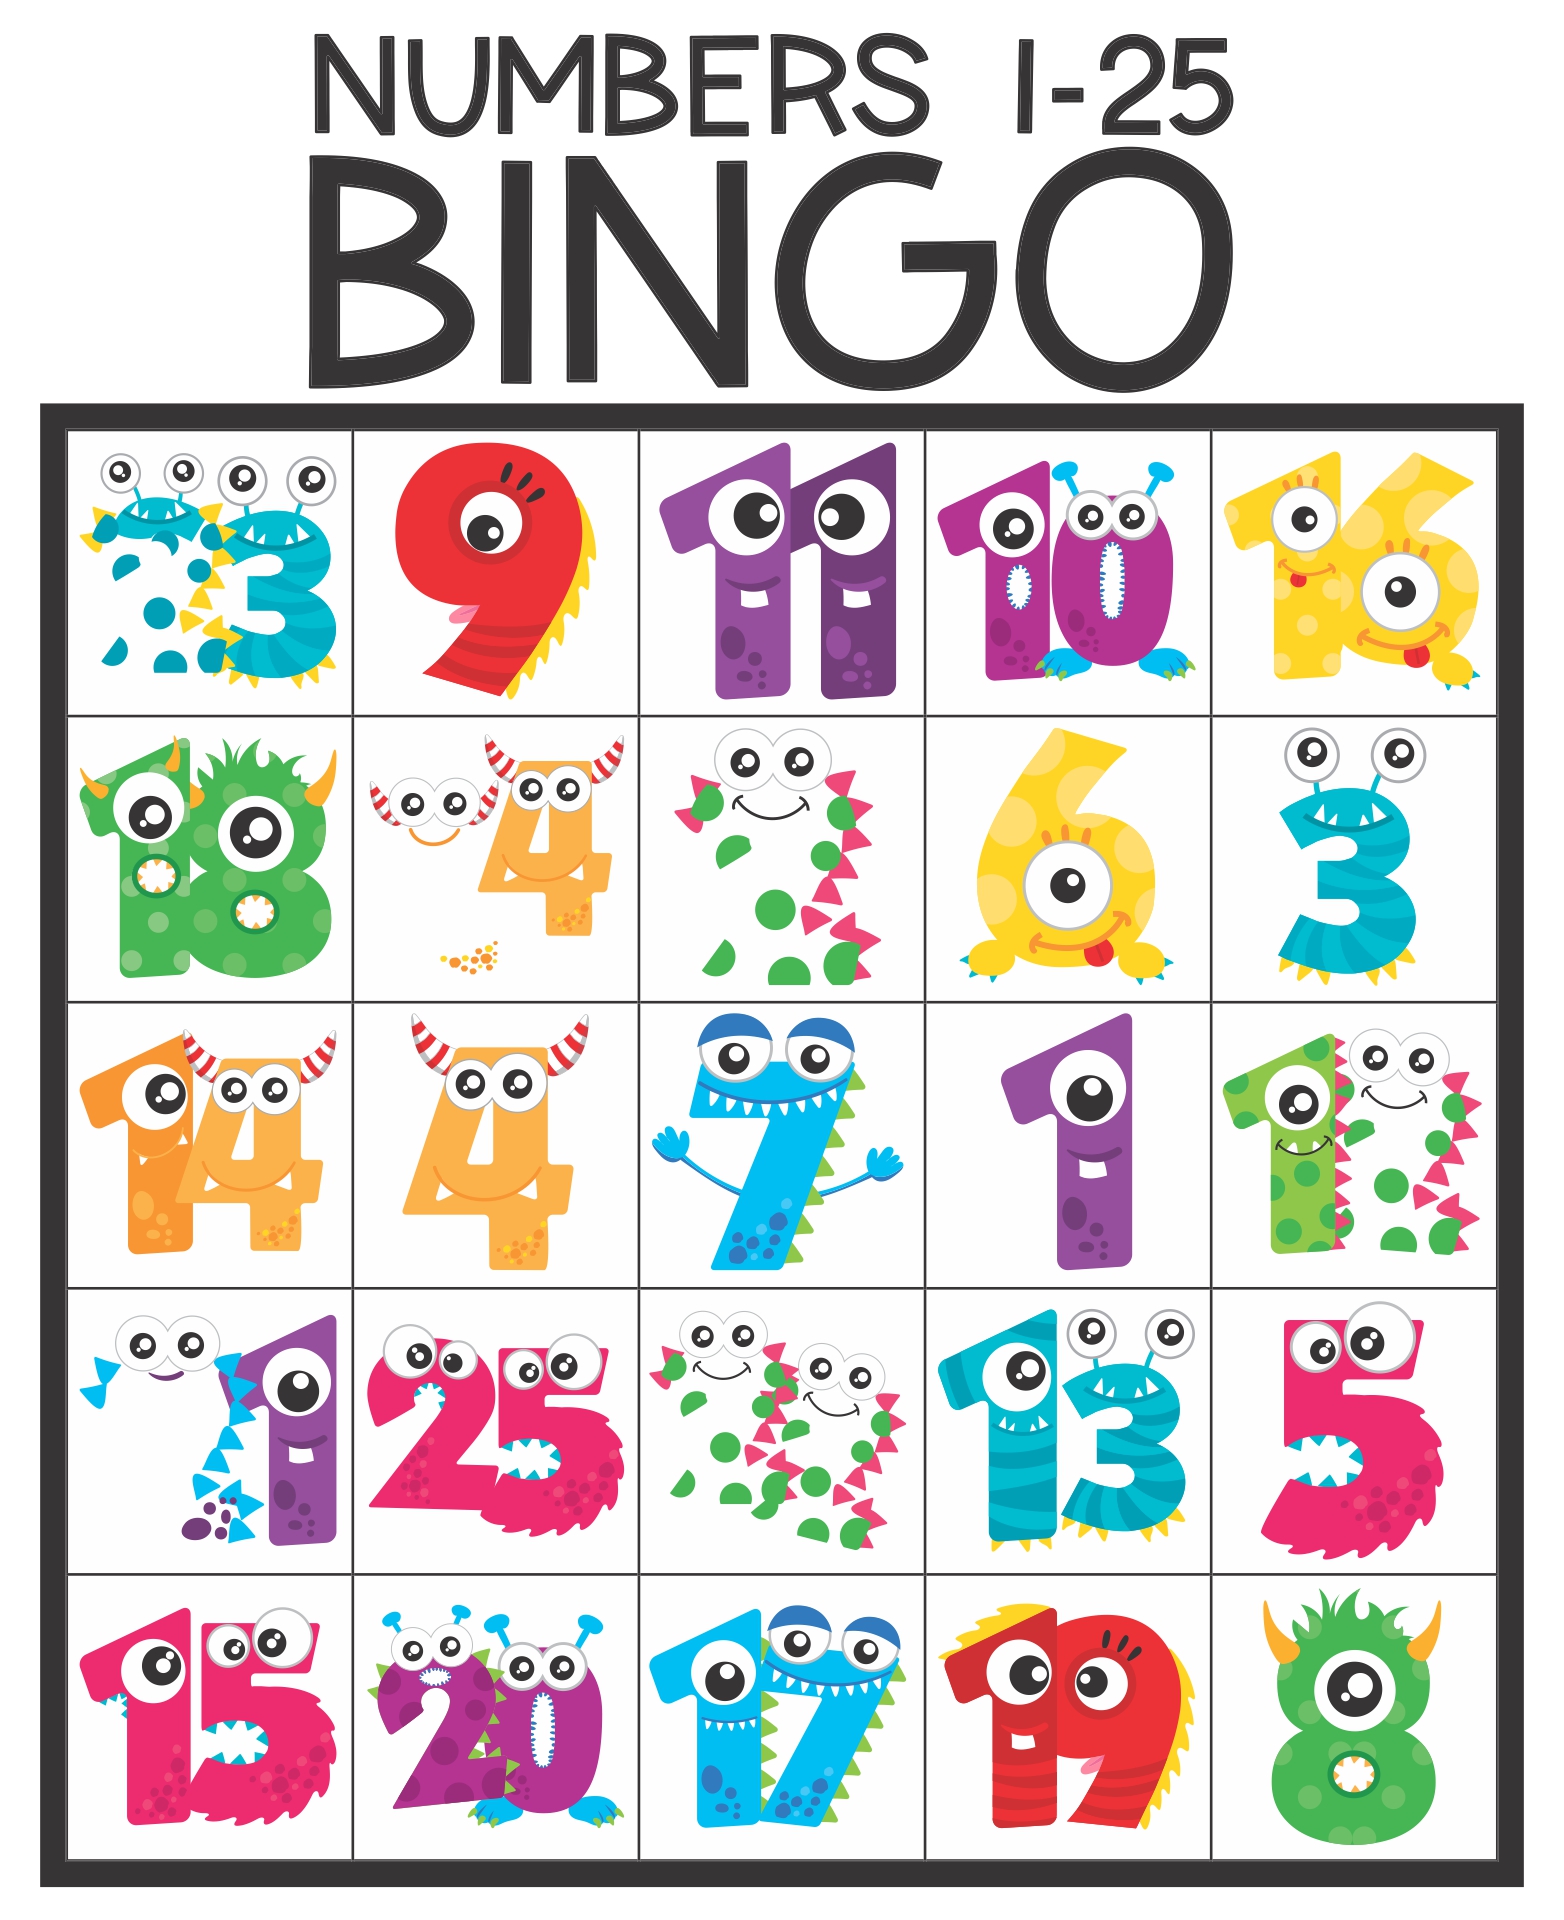 100-free-printable-bingo-cards-1-75-bingo-patterns-illustration-bingo-card-patterns-free